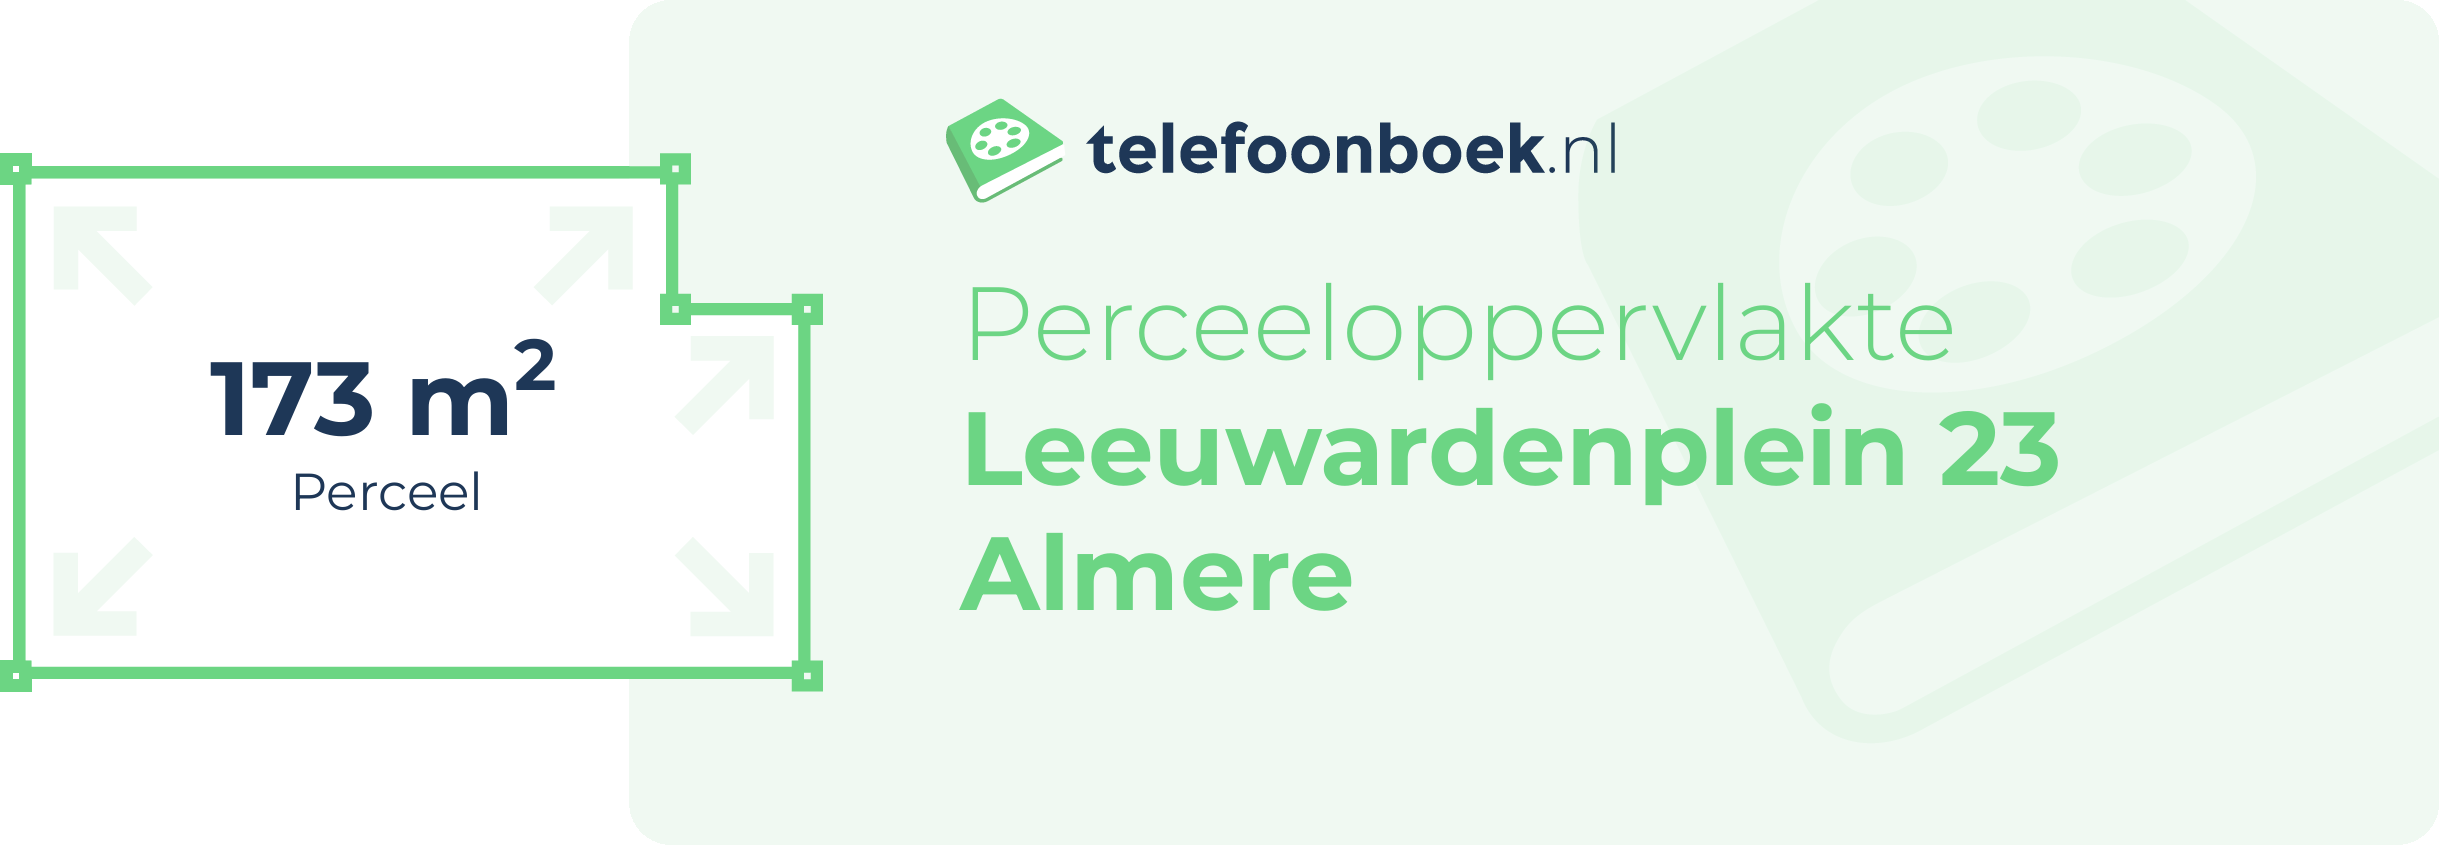 Perceeloppervlakte Leeuwardenplein 23 Almere